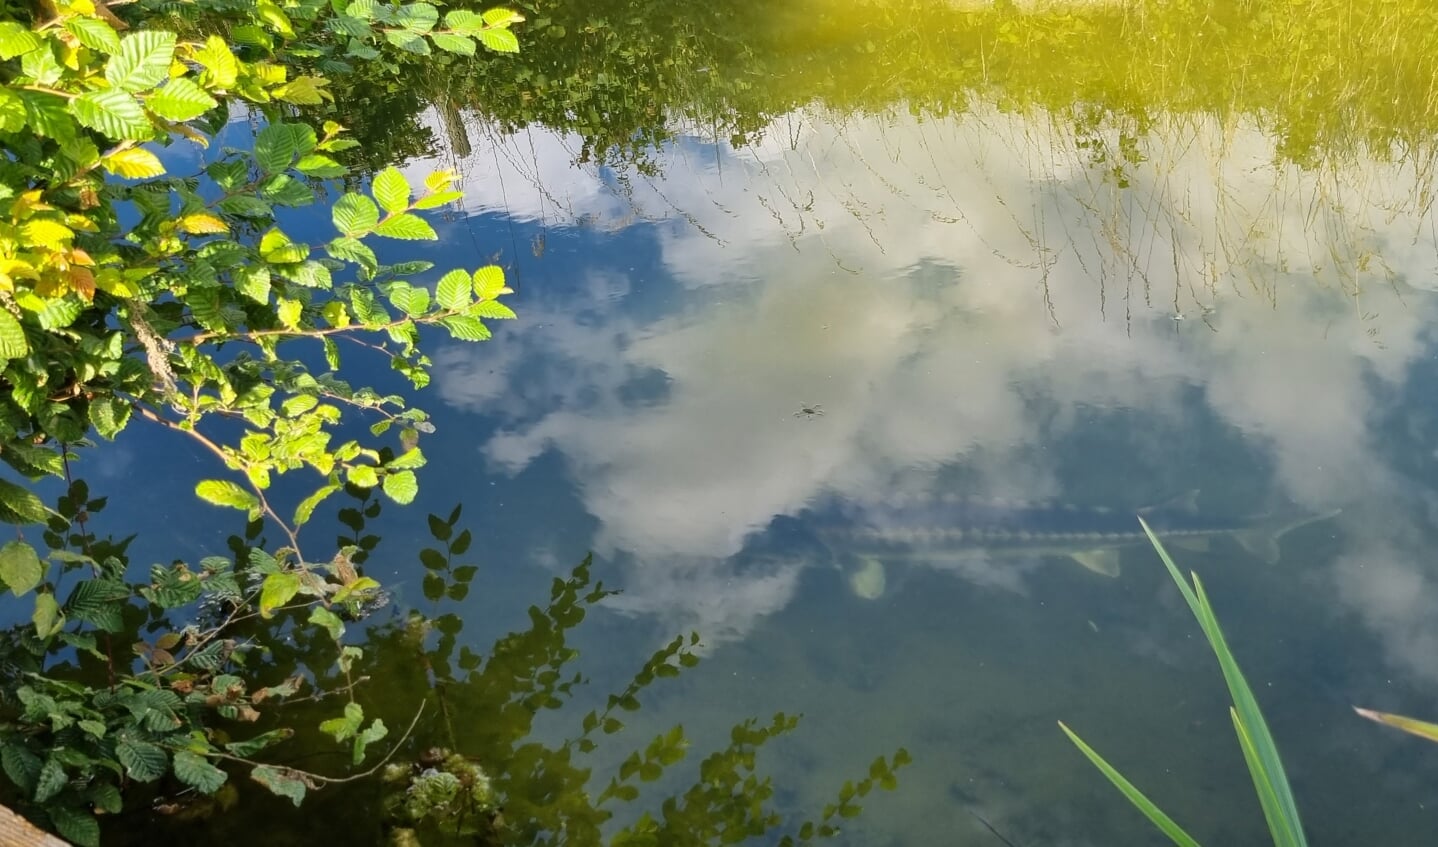 Deze foto is op 6 augustus gemaakt in de Betuwe en laat een grote steur zien die statig langs kwam zwemmen. Dat is ook de reden waarom ik de foto zo mooi vind: een dier helemaal in zijn element, figuurlijk en letterlijk in de wolken!